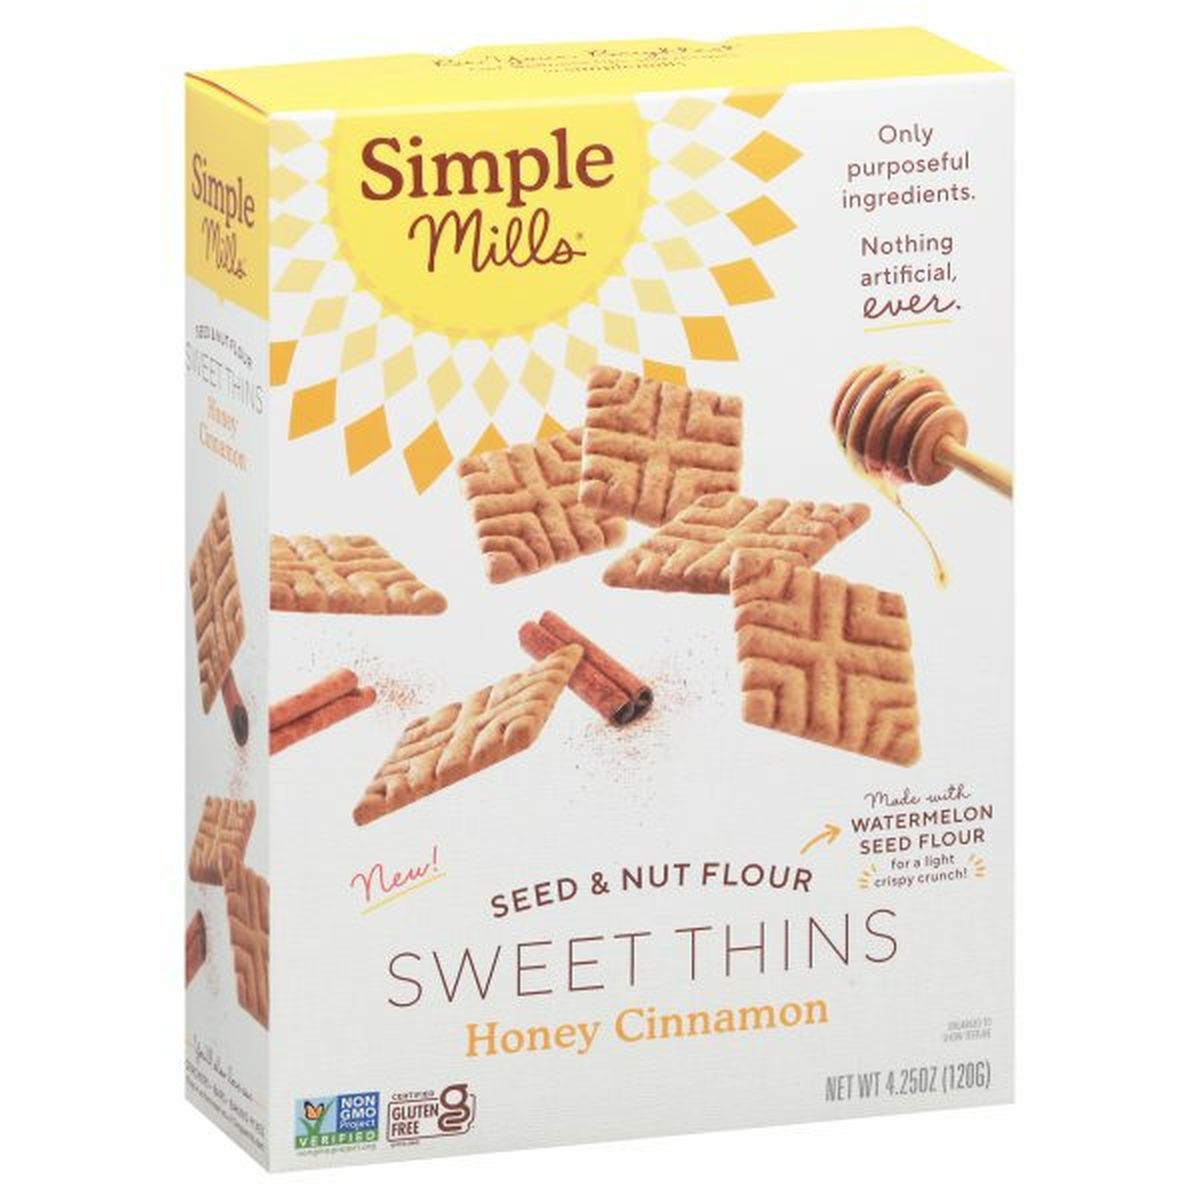 Calories in Simple Mills Sweet Thins, Honey Cinnamon, Seed & Nut Flour